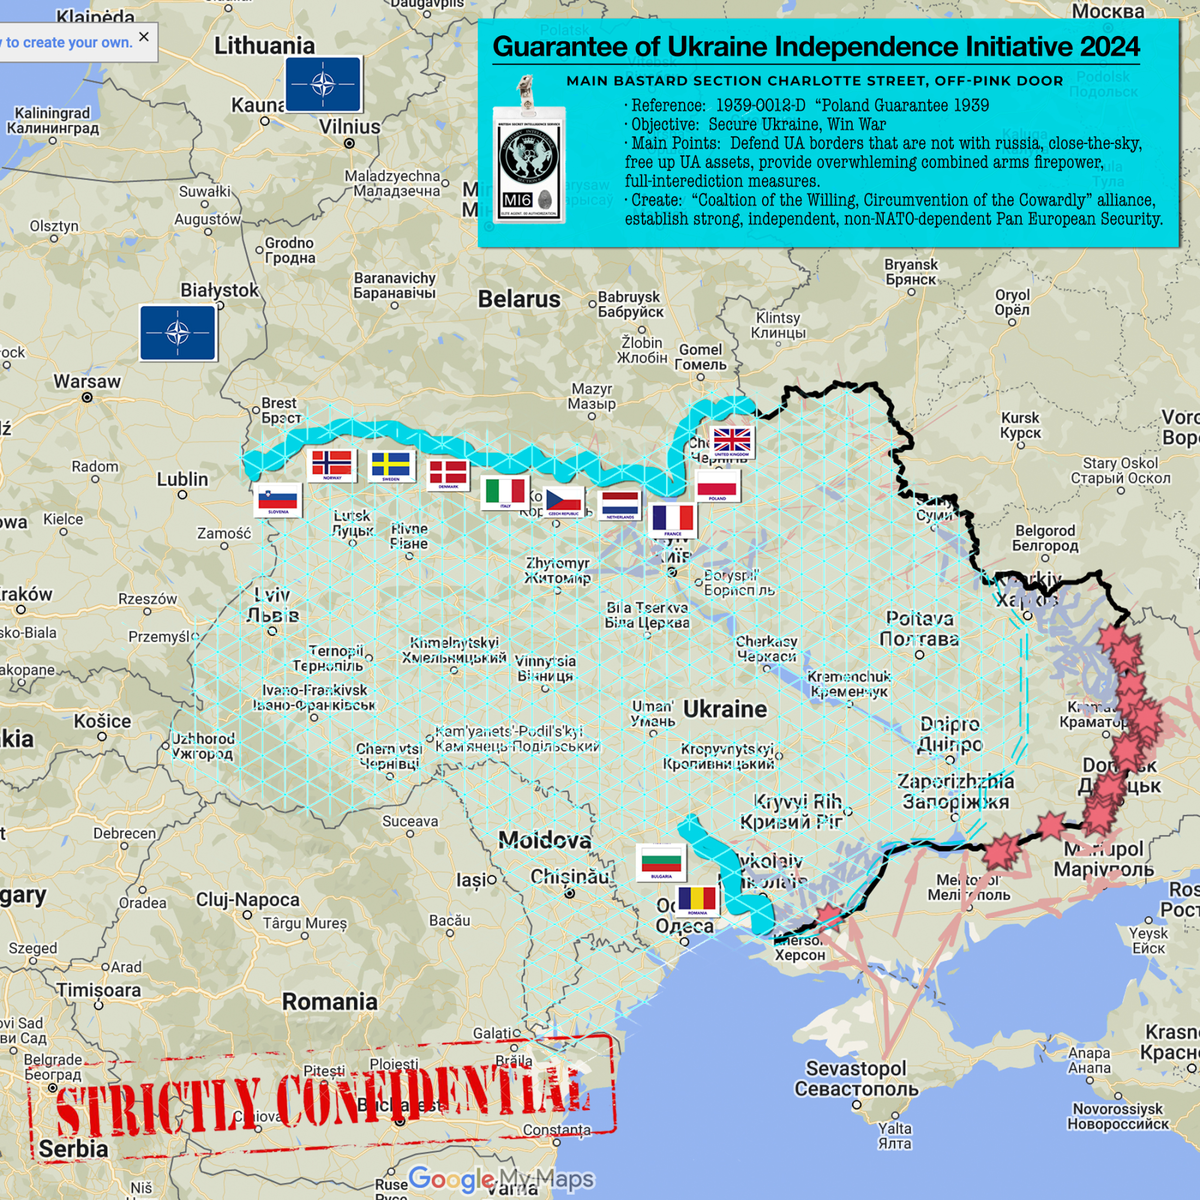 Карта Инициативы гарантии независимости Украины в 2024 году / Снимок экрана. Из открытых источников